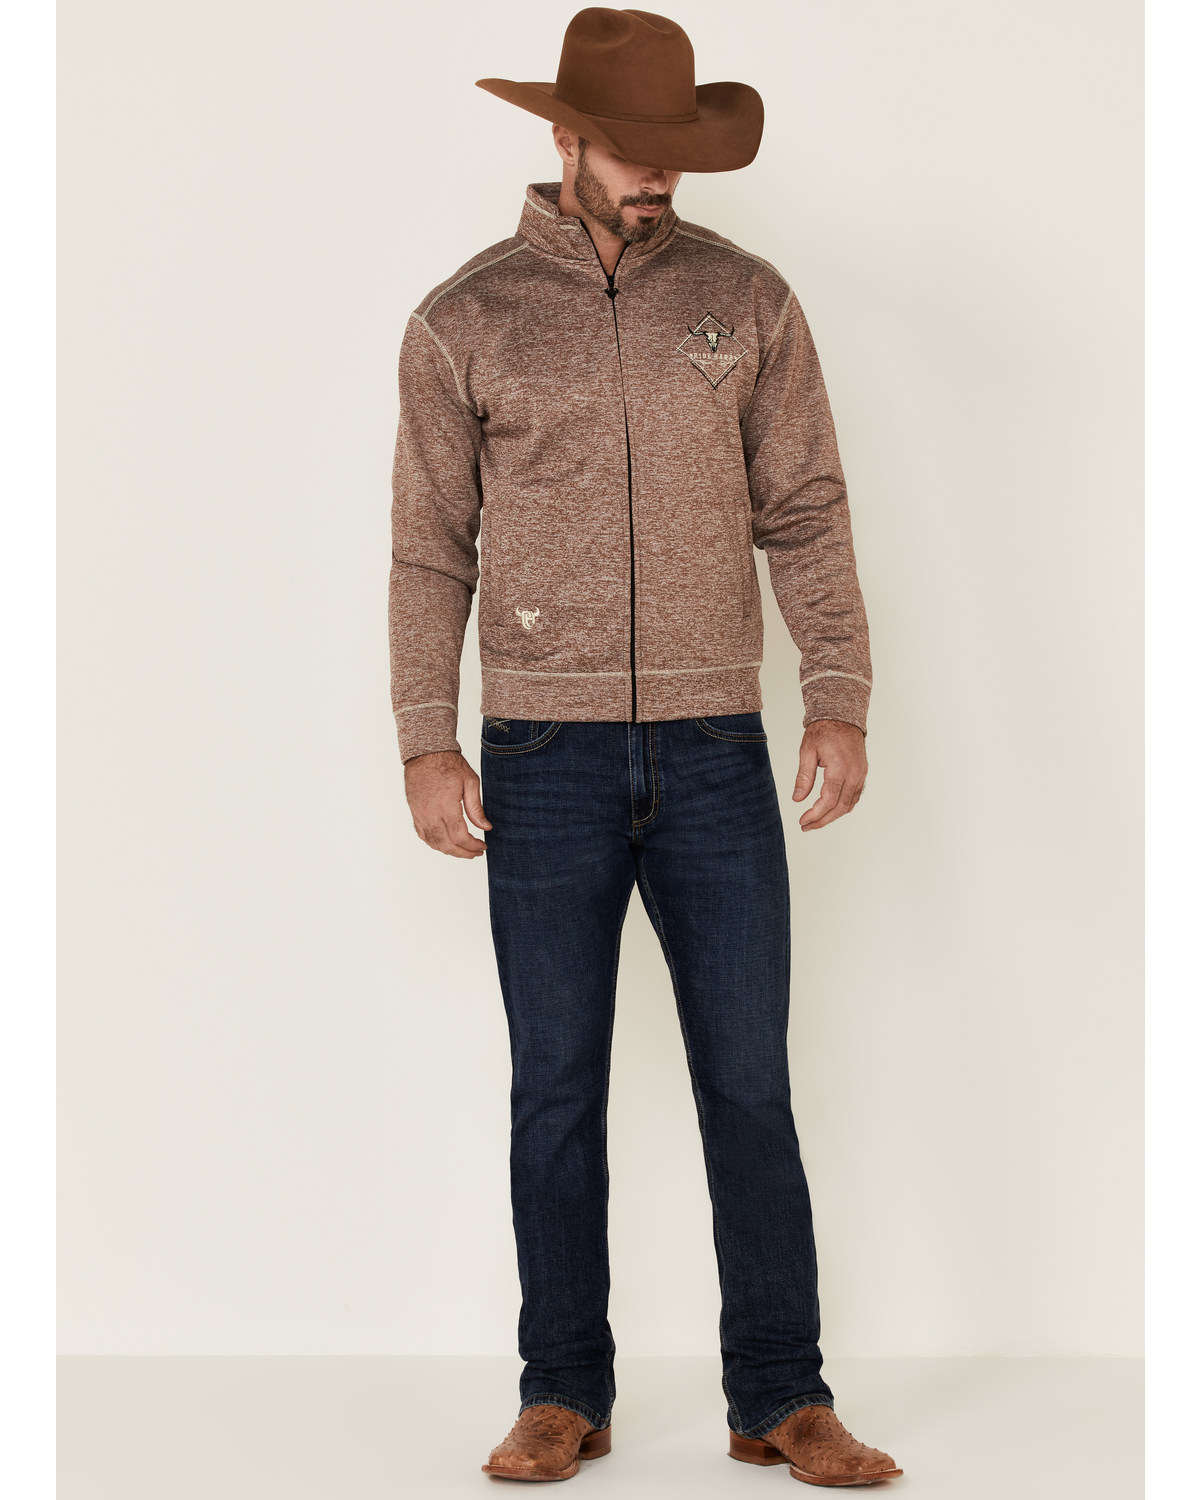 Cowboy Hardware Men's Microfleece Zip-Up Jacket